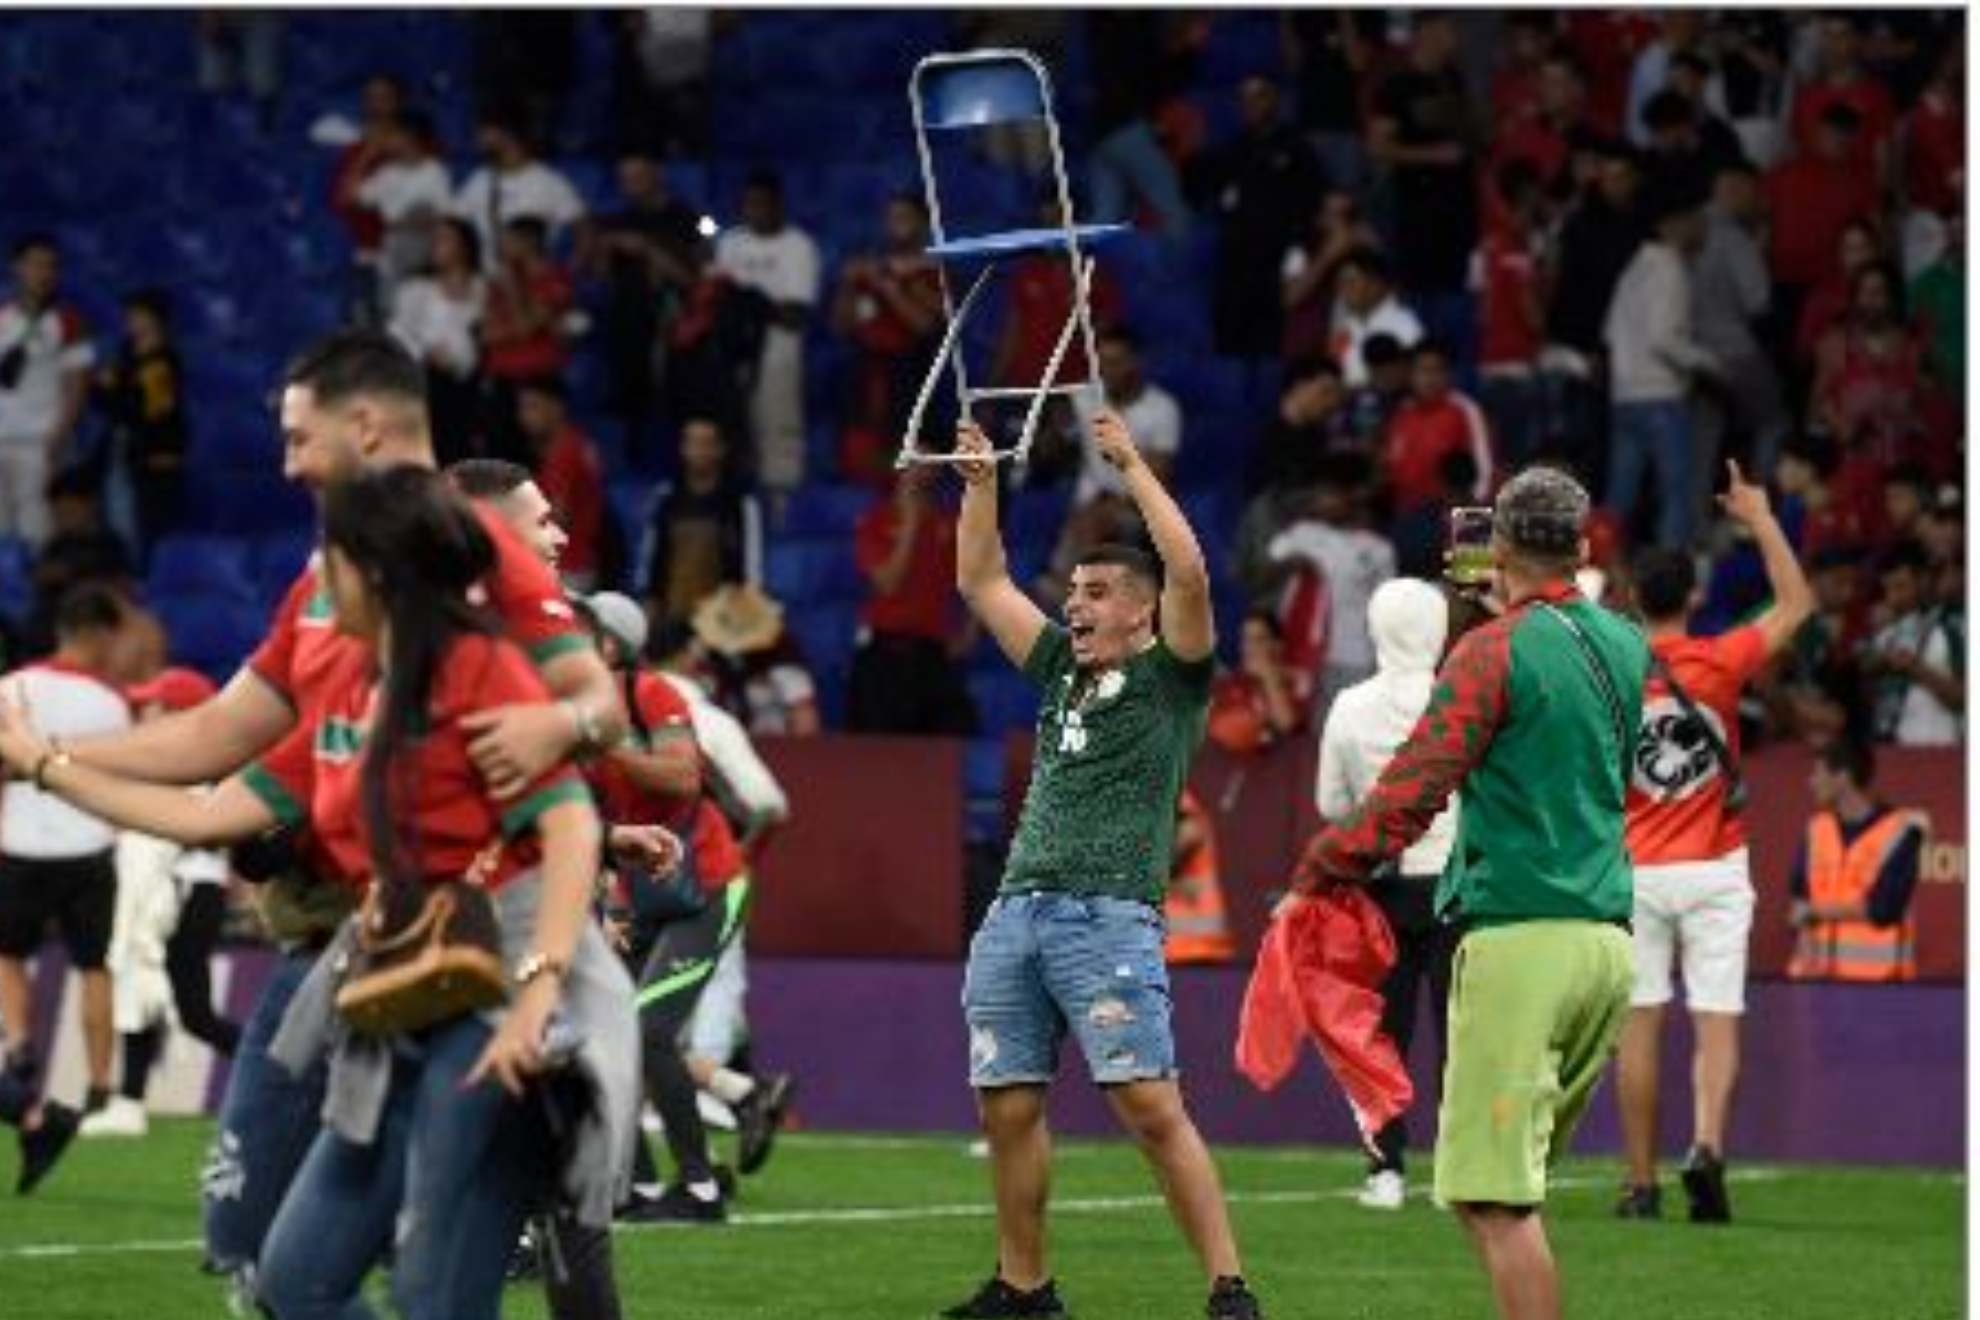 Asalto al RCDE Stadium durante el Marruecos-Chile: el Espanyol pedir responsabilidades